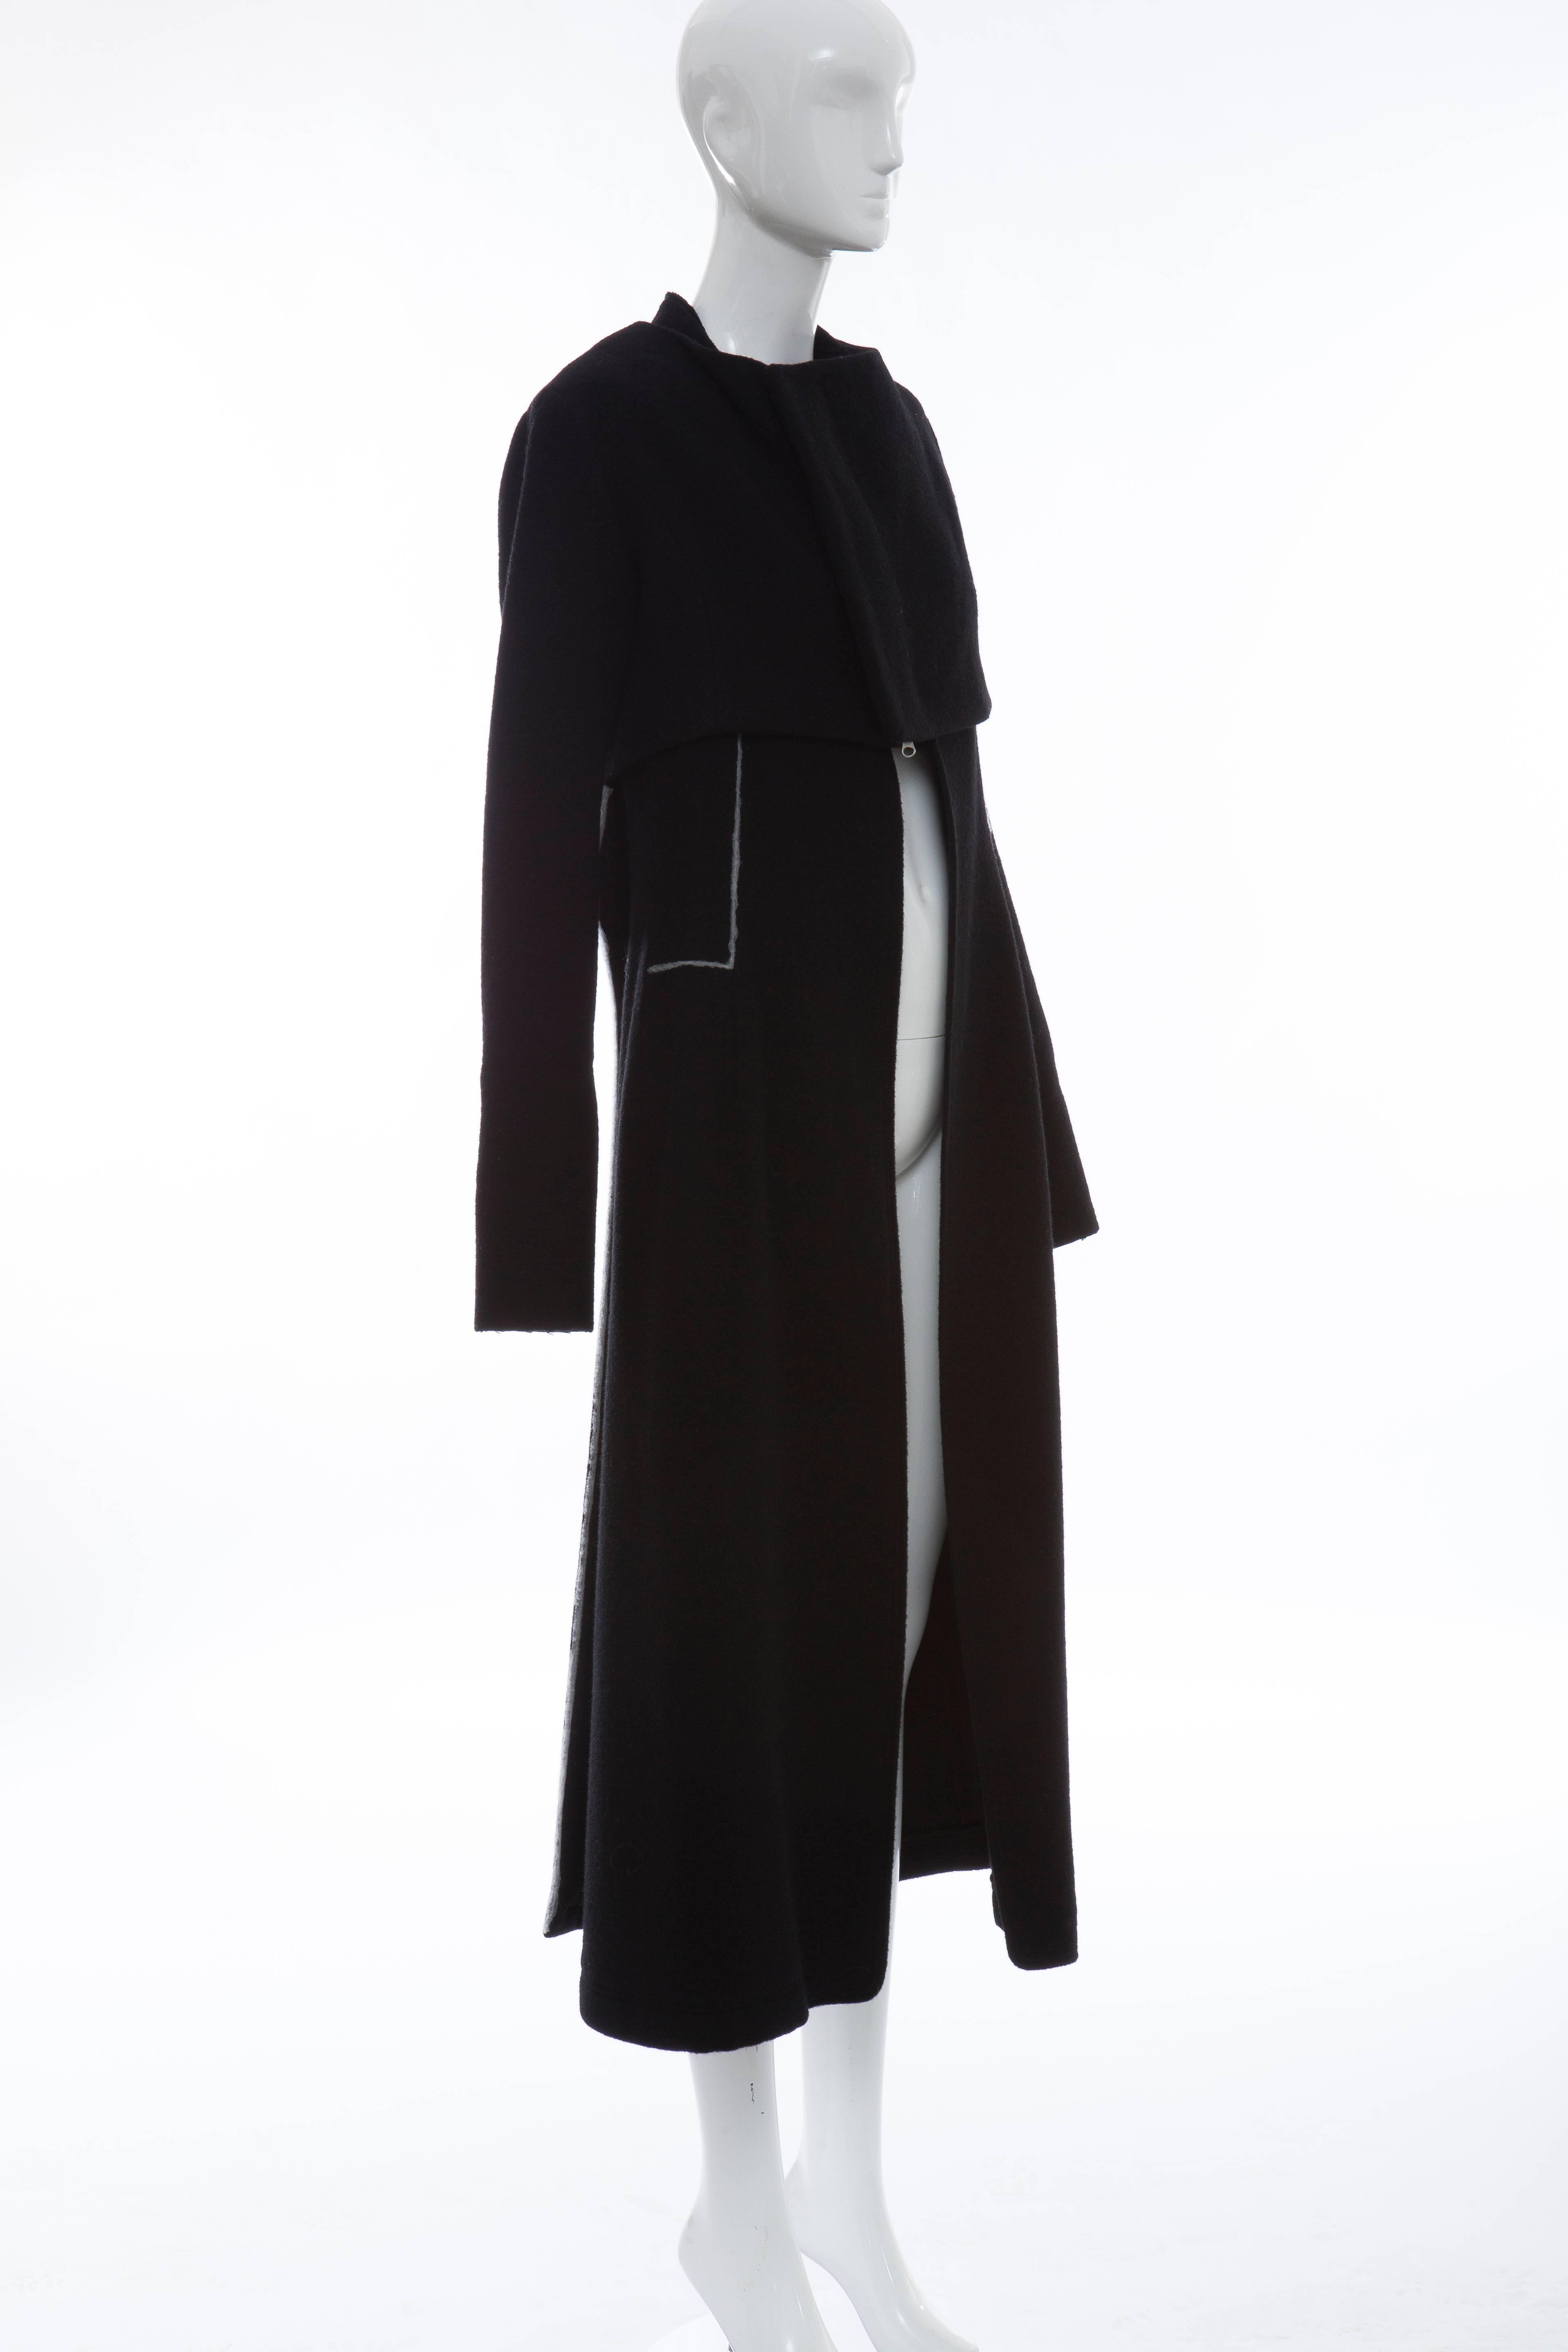 Yohji Yamamoto Black Wool Zip Front Jacket And Vest Ensemble 1